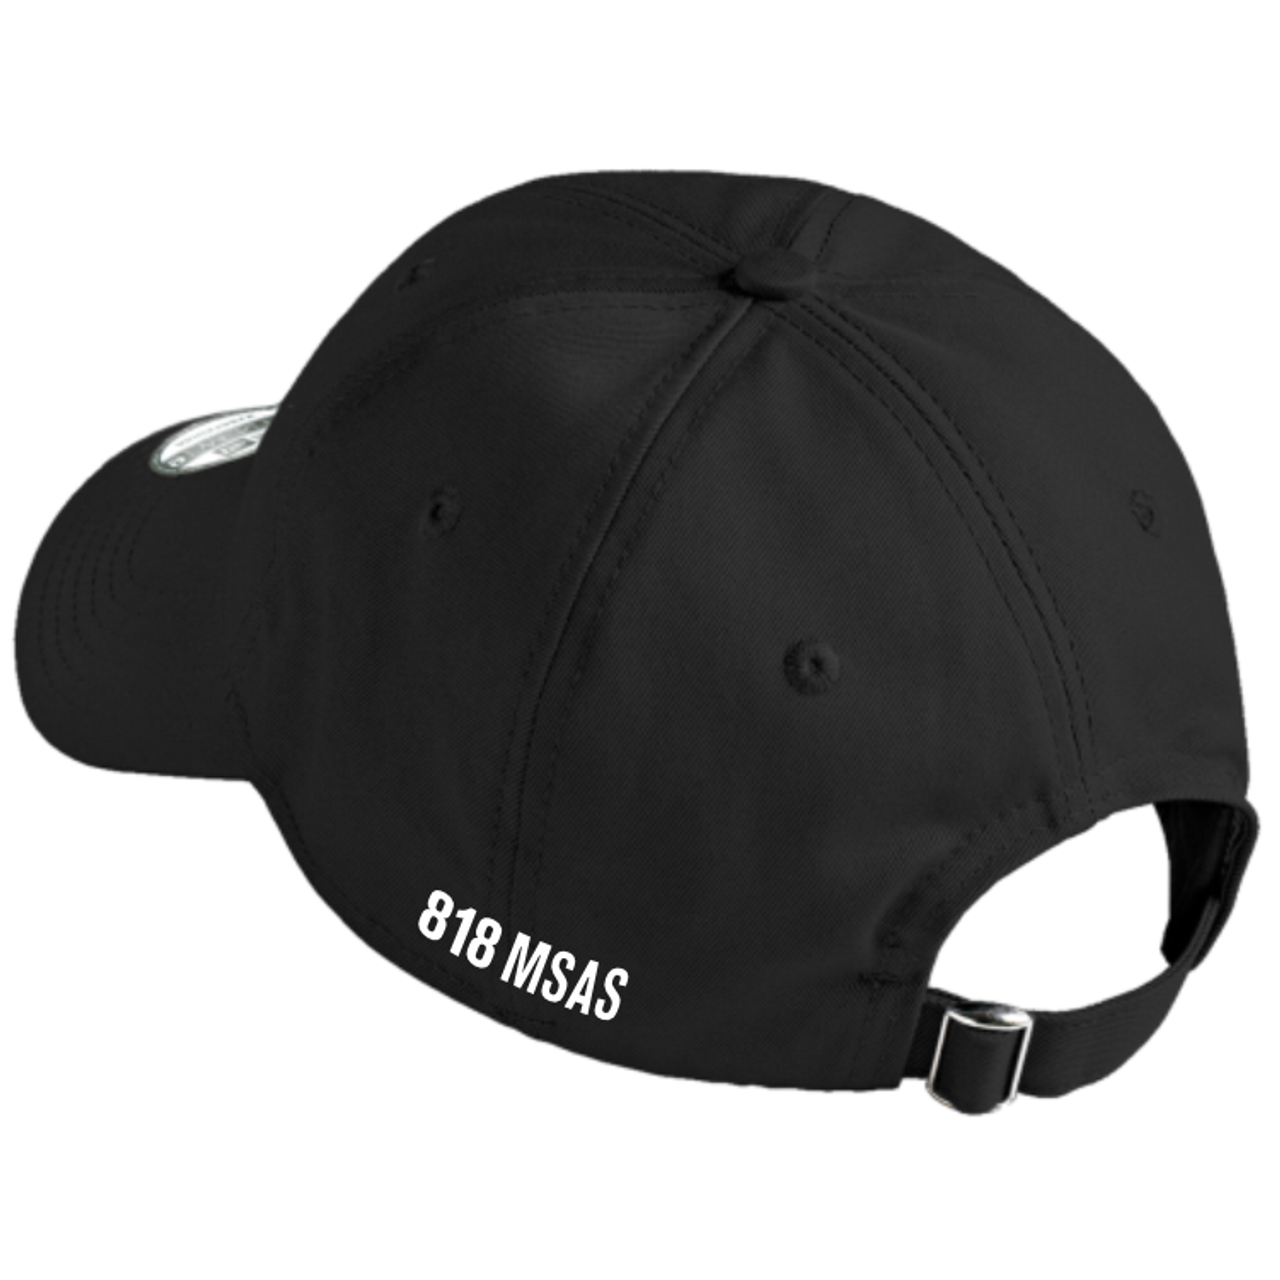 818 MSAS Adjustable Twill Hat, Black